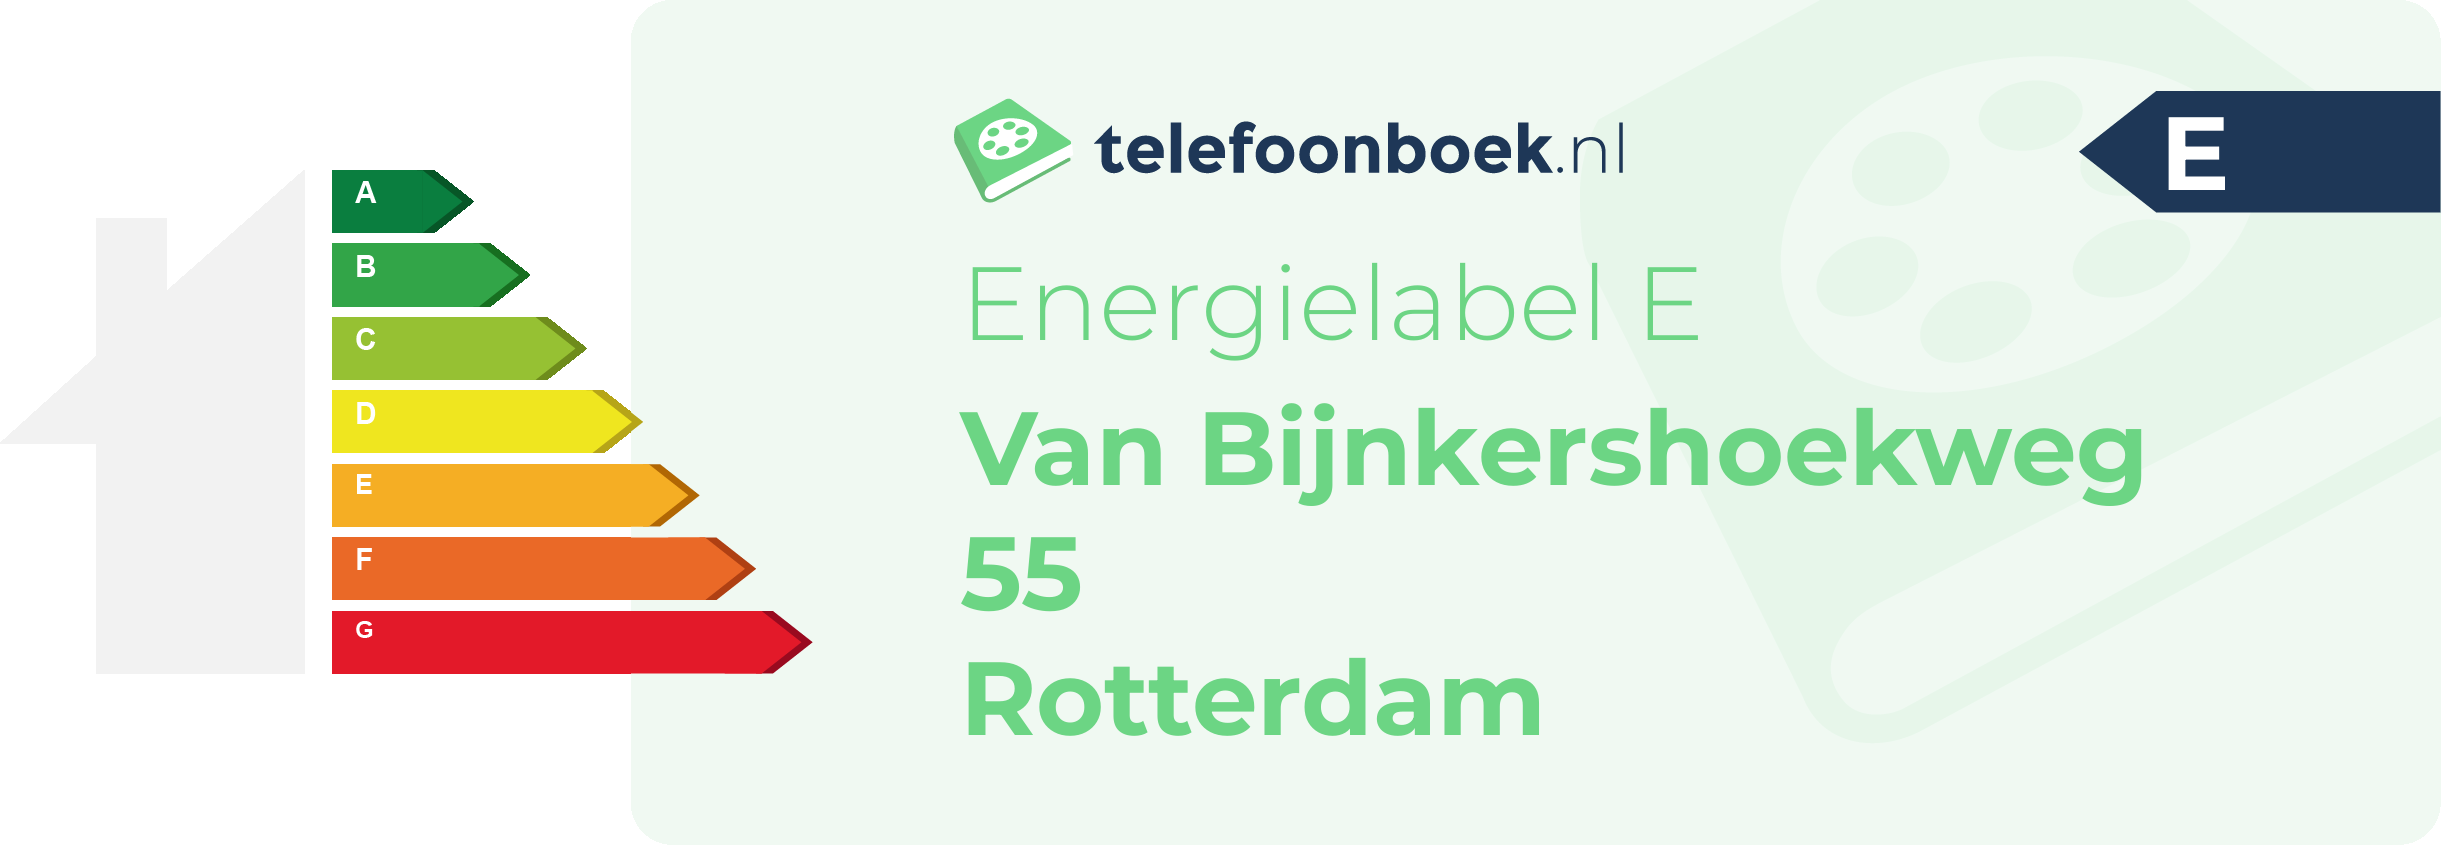 Energielabel Van Bijnkershoekweg 55 Rotterdam